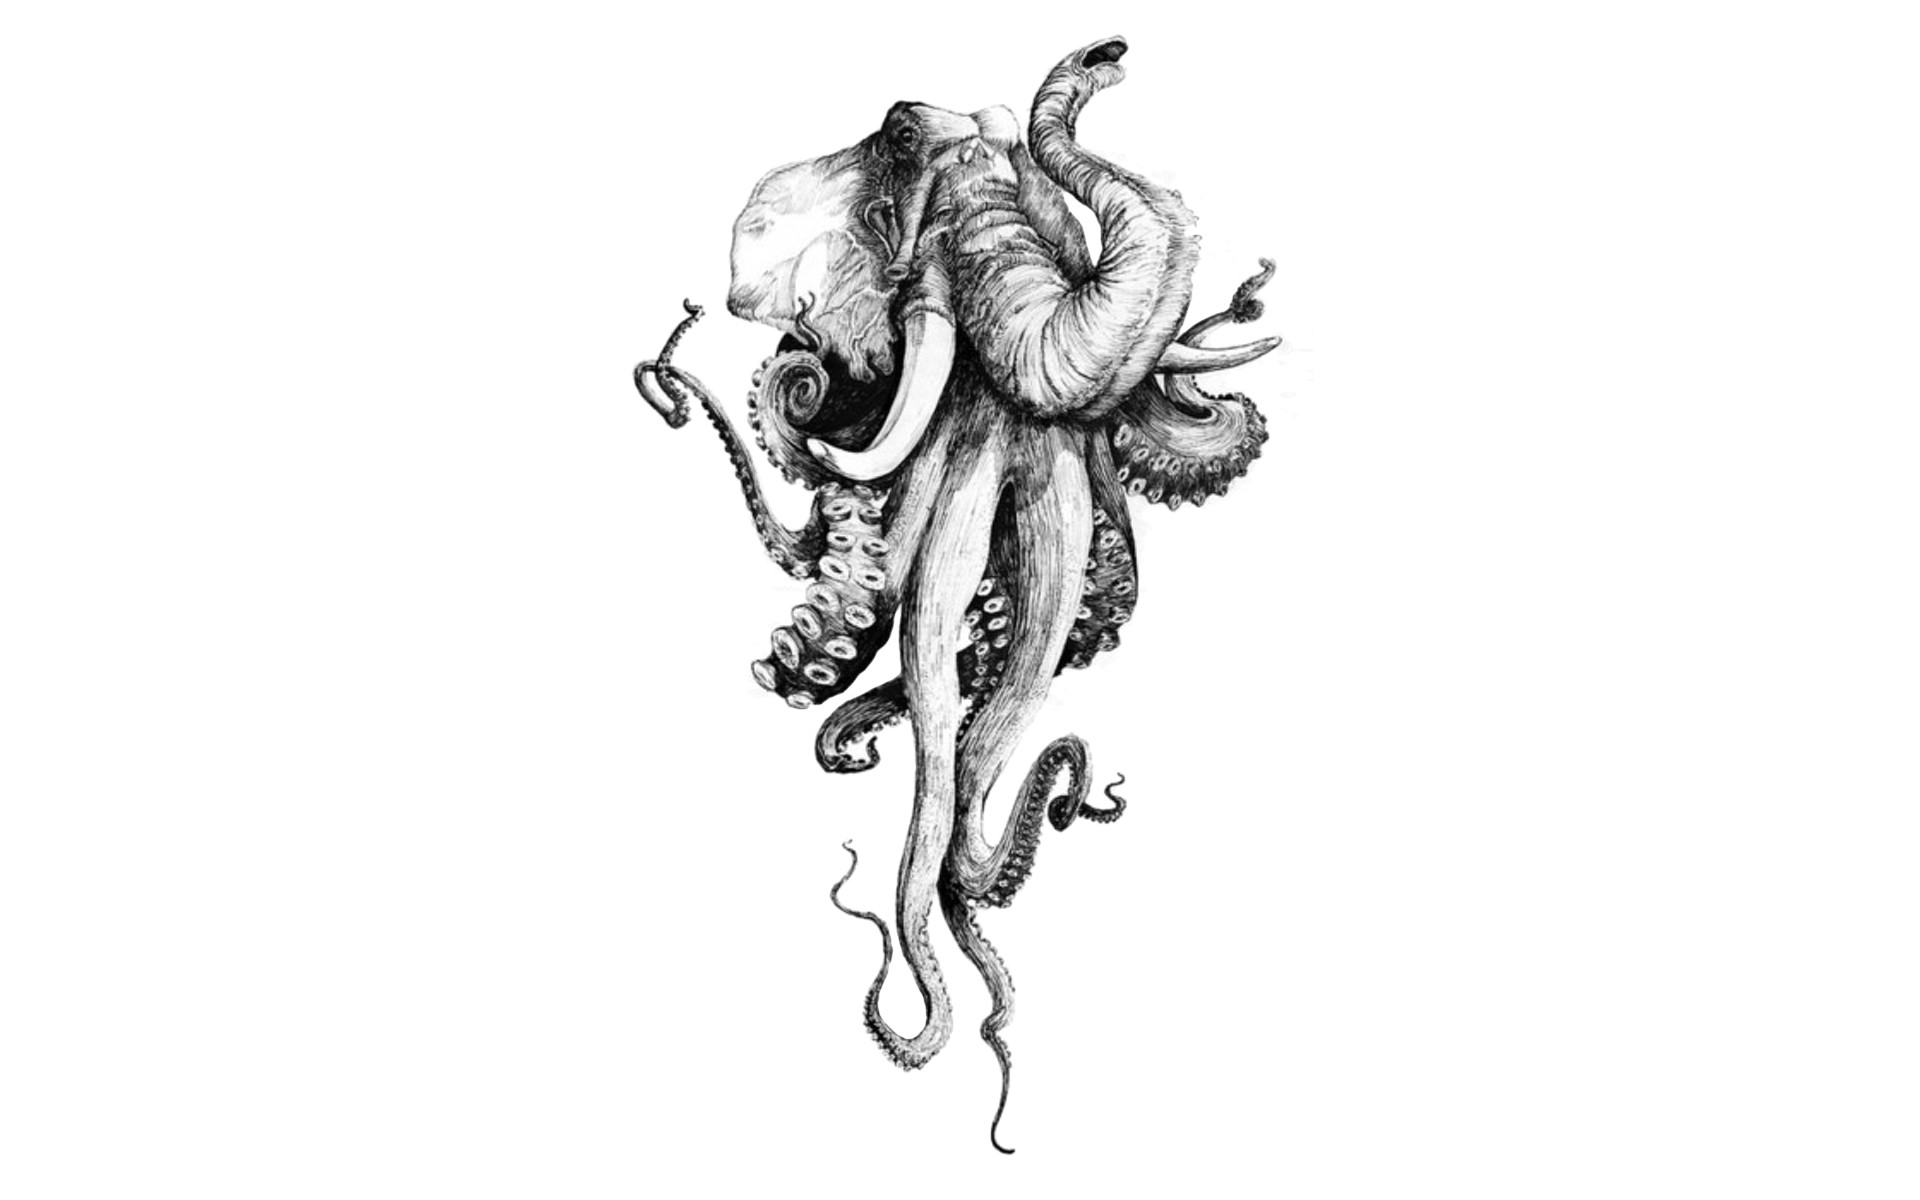 Octophant - elephant/octopus hybrid art